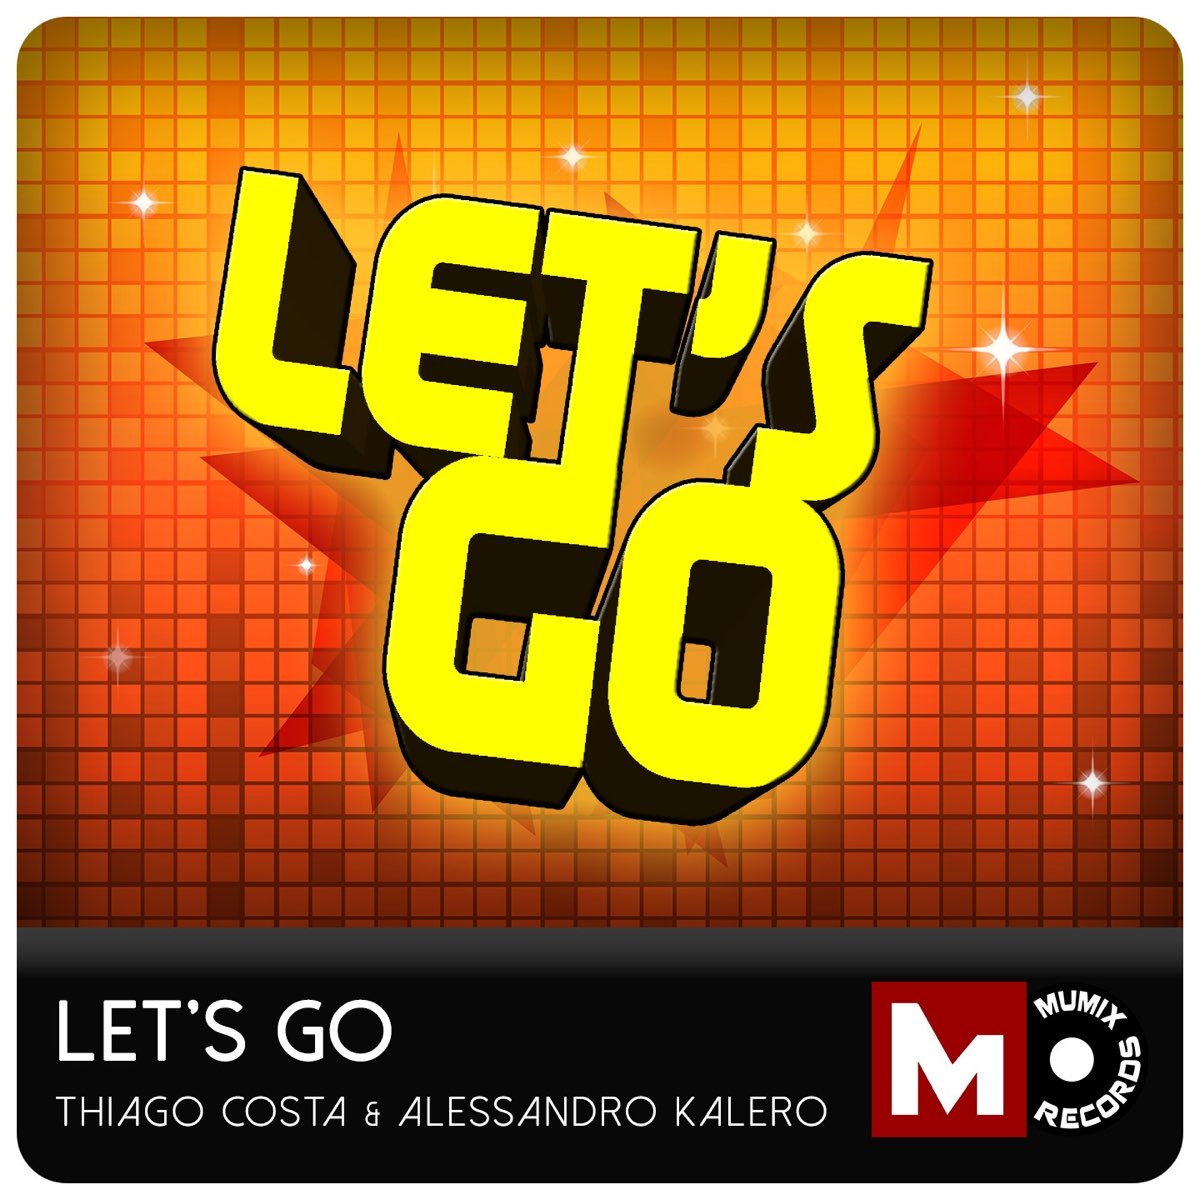 Летс ю гоу. Let's go исполнитель. Lets go песня. Let’s go Let’s go Let’s go Let’s go песня. Песня lats Ghaz.